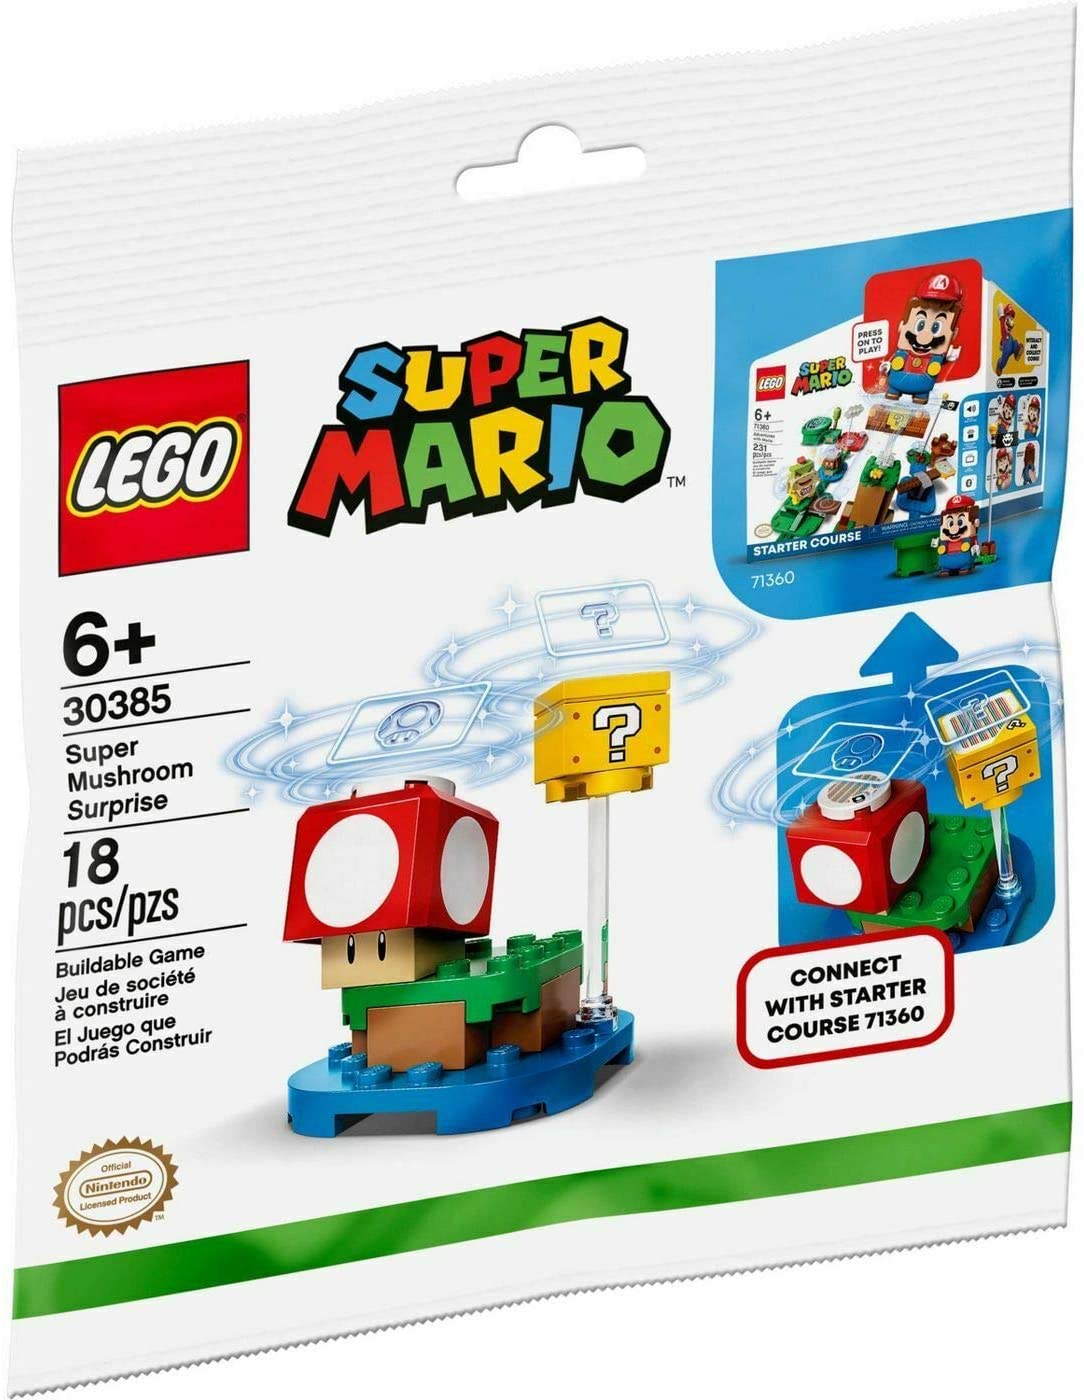 LEGO® Super Mario 30385 Super Mushroom Surprise (18 pieces) – AESOP'S FABLE